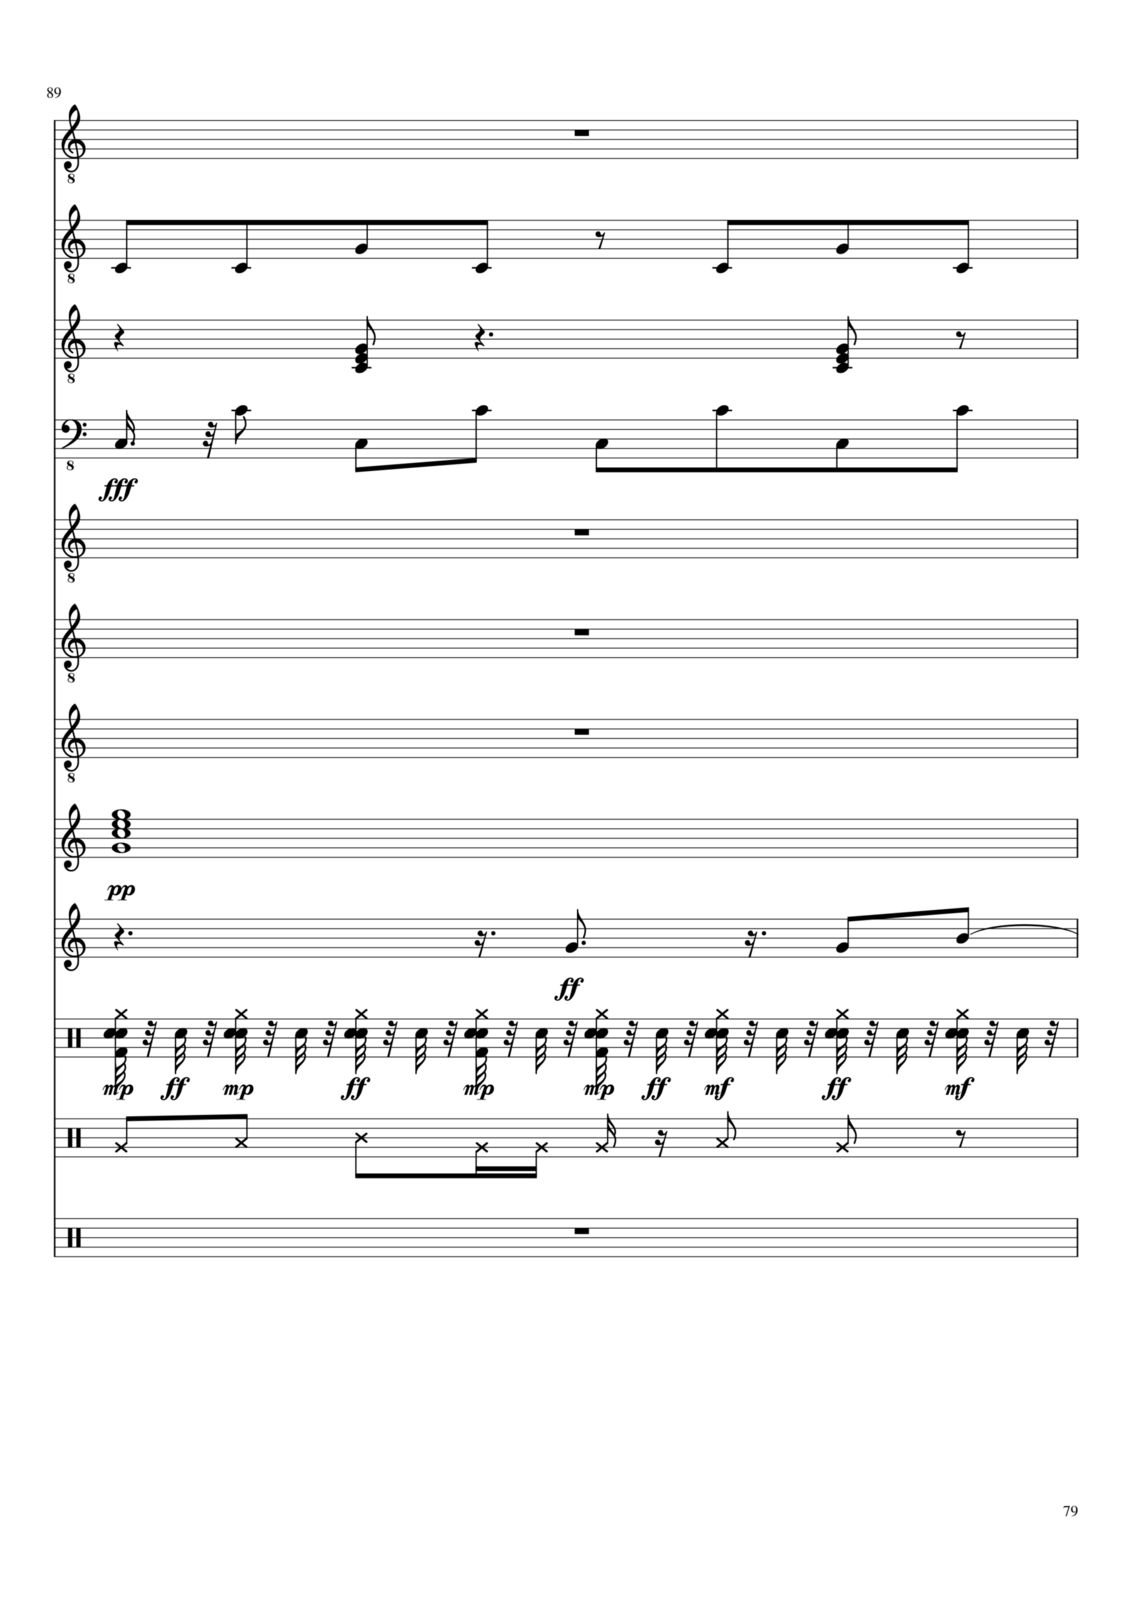 Vechnaya prizrachnaya vstrechnaya slide, Image 27